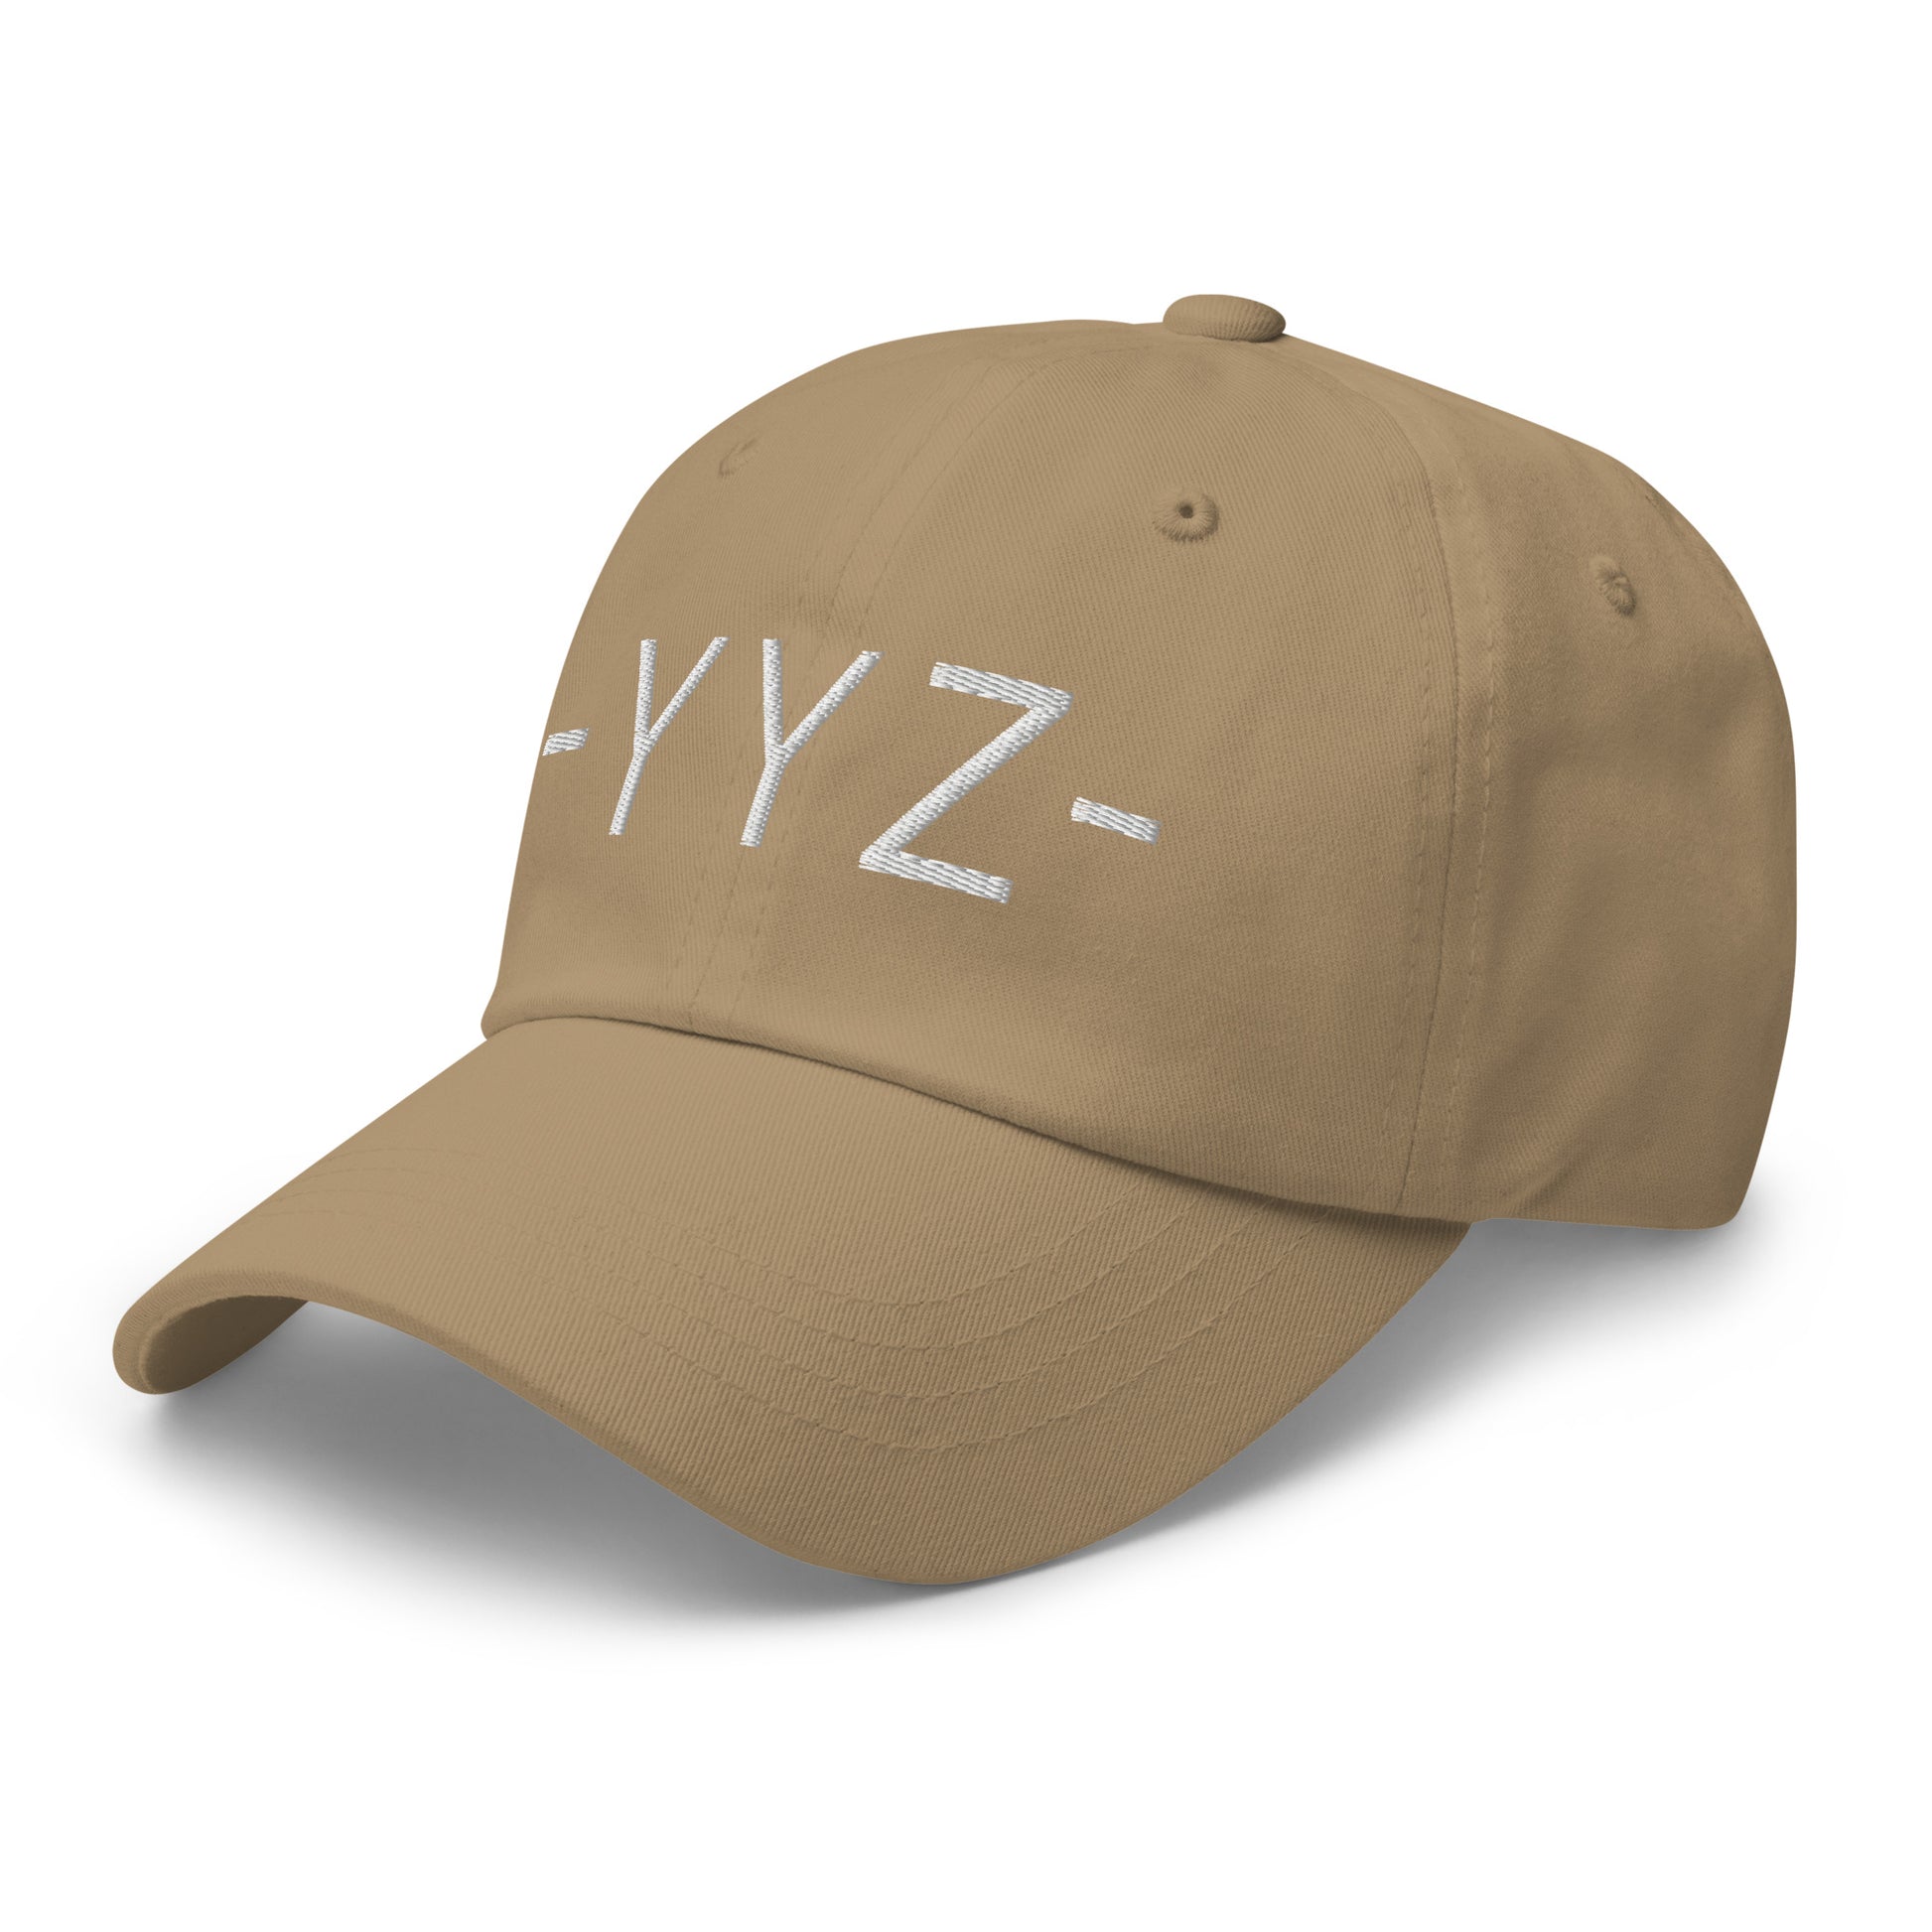 Souvenir Baseball Cap - White • YYZ Toronto • YHM Designs - Image 22